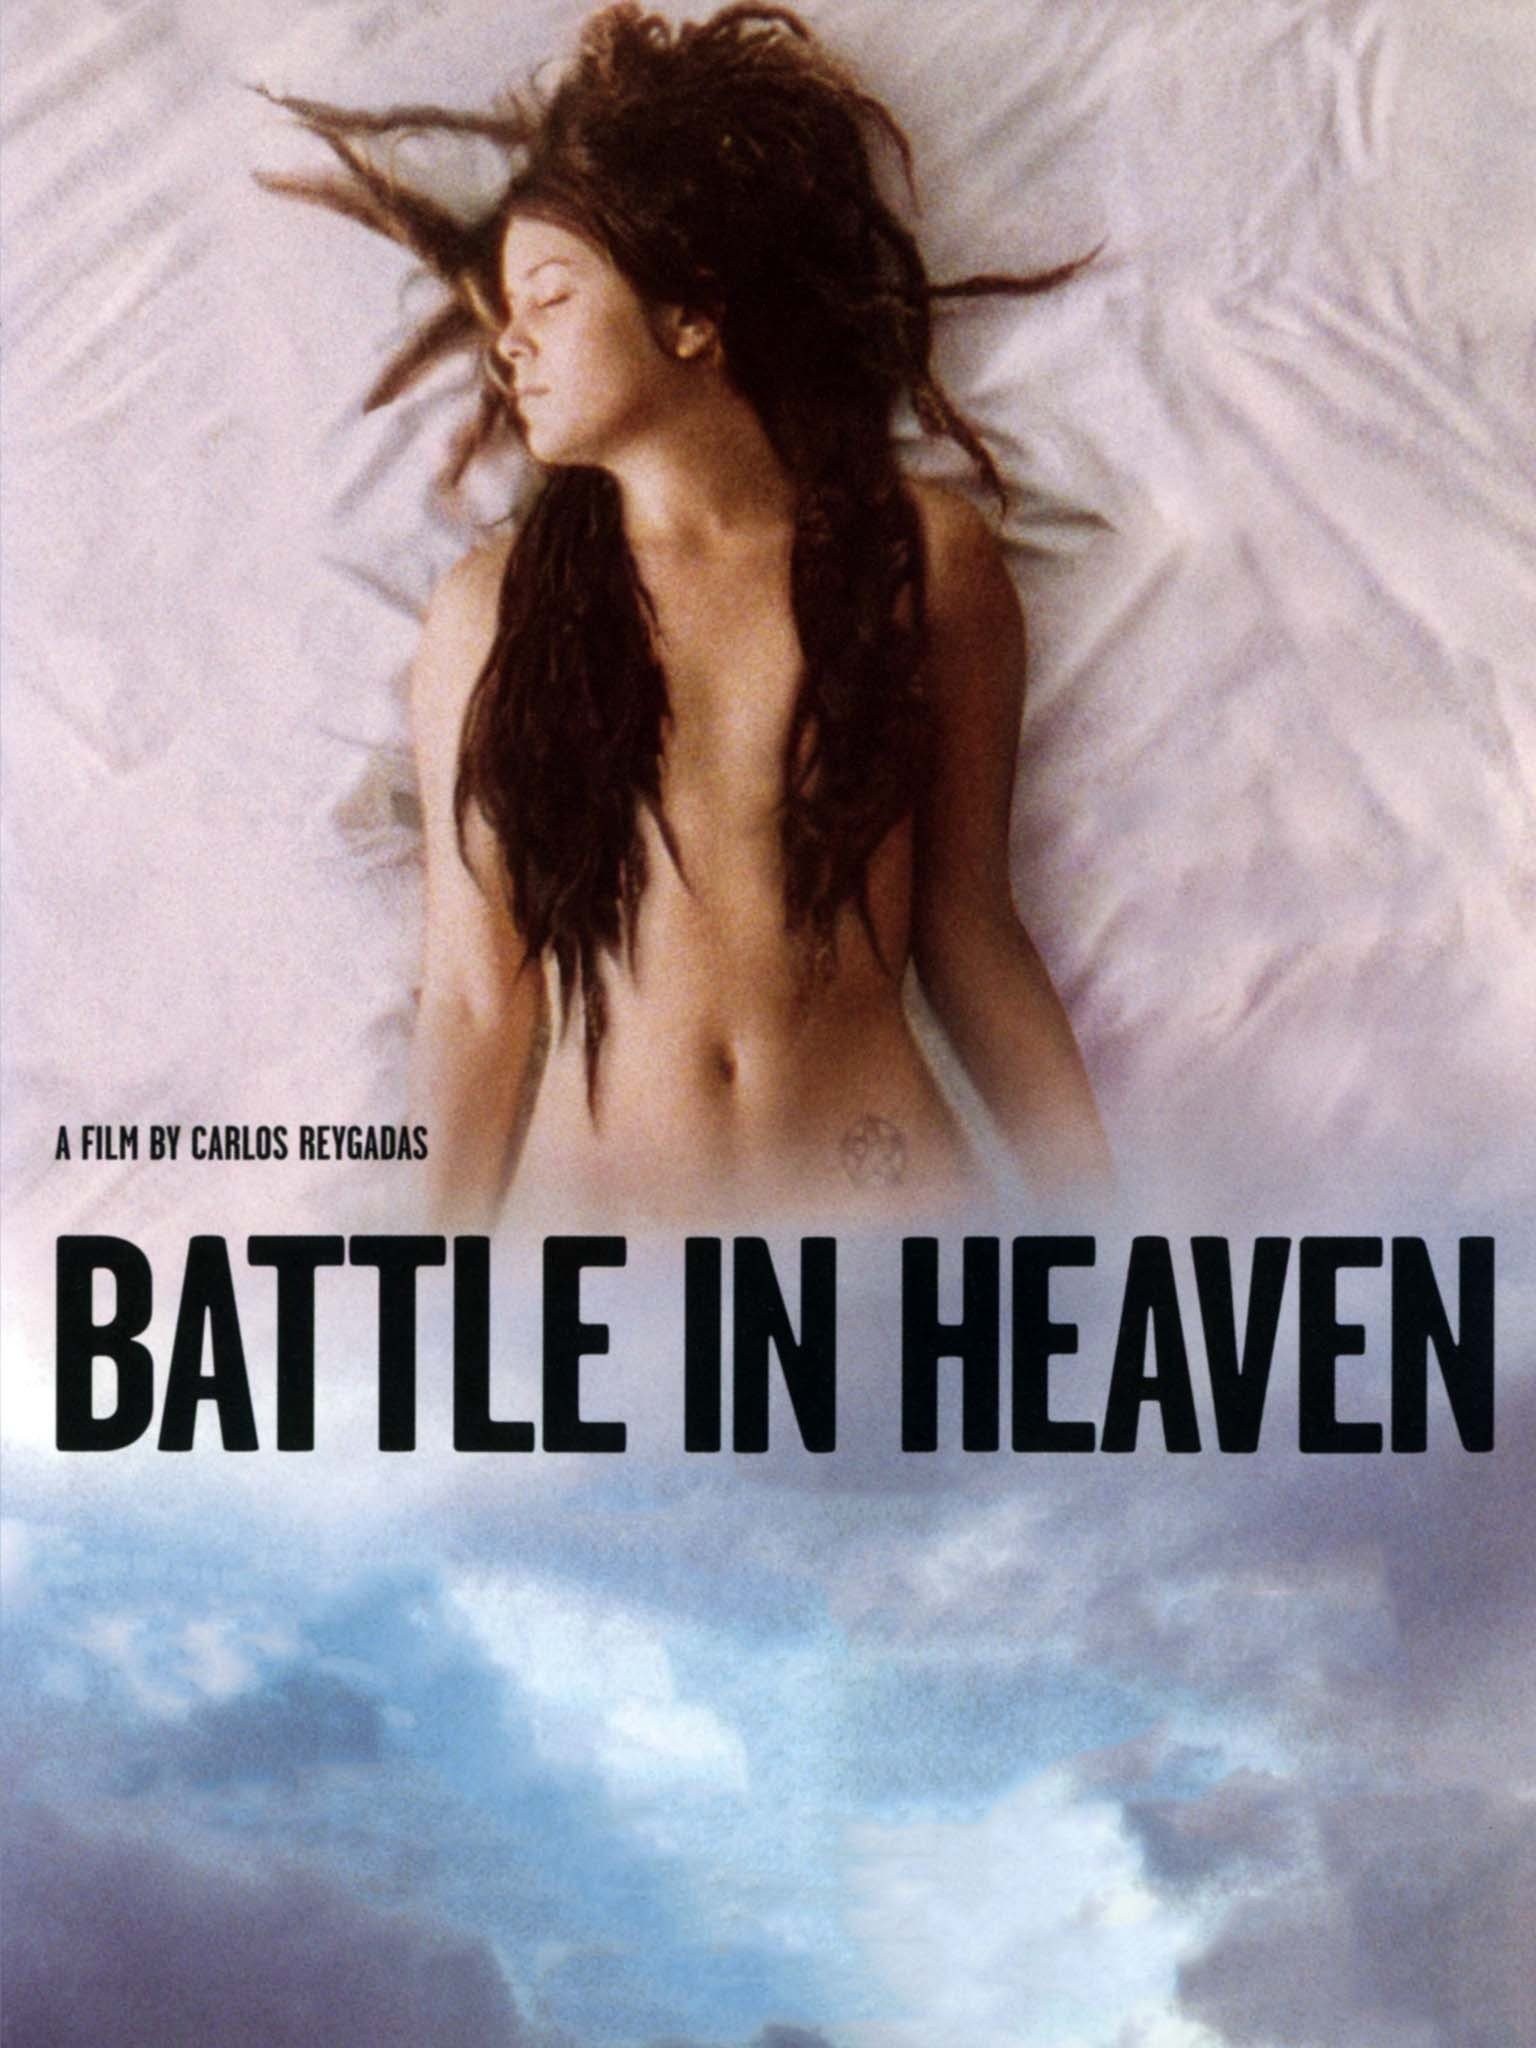 Battle in heaven 2005